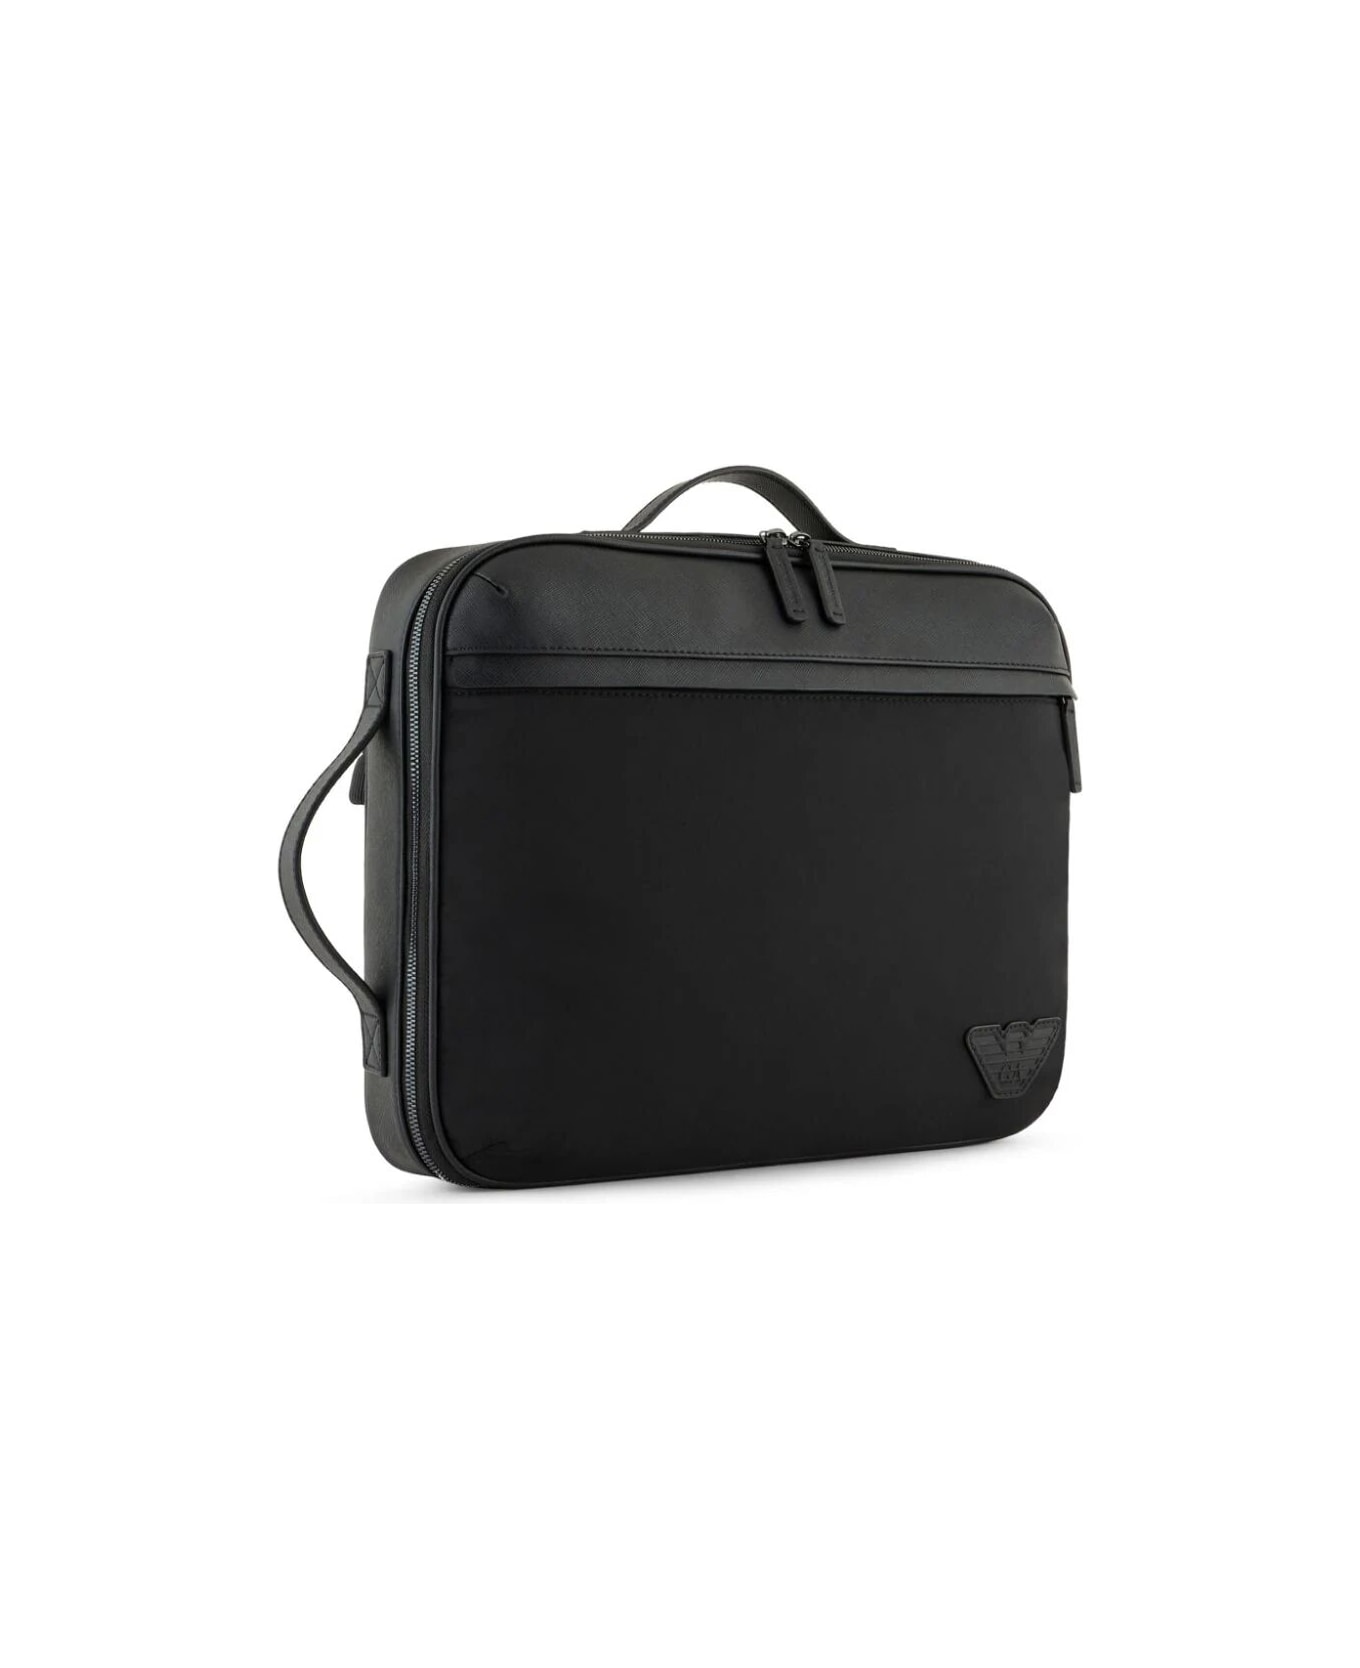 Emporio Armani Briefcase - Ash Black